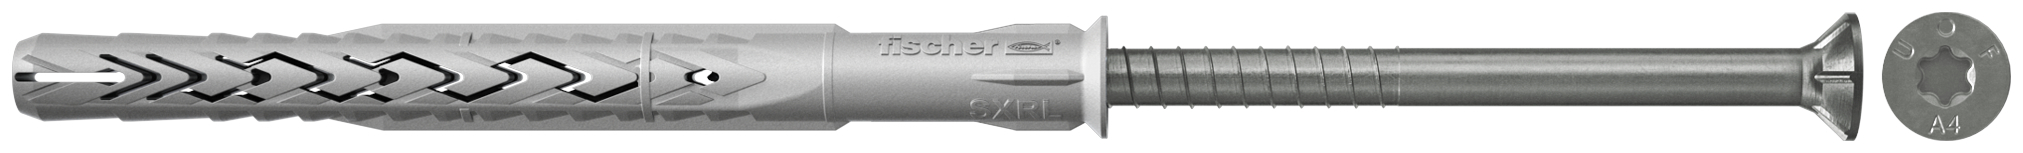 fischer Tasselli prolungati SXRL 10X80 T A4 (1 Pz.) Tassello prolungato in nylon con marcatura CE con vite premontata in acciaio inox A4, T.S.P. impronta torx.